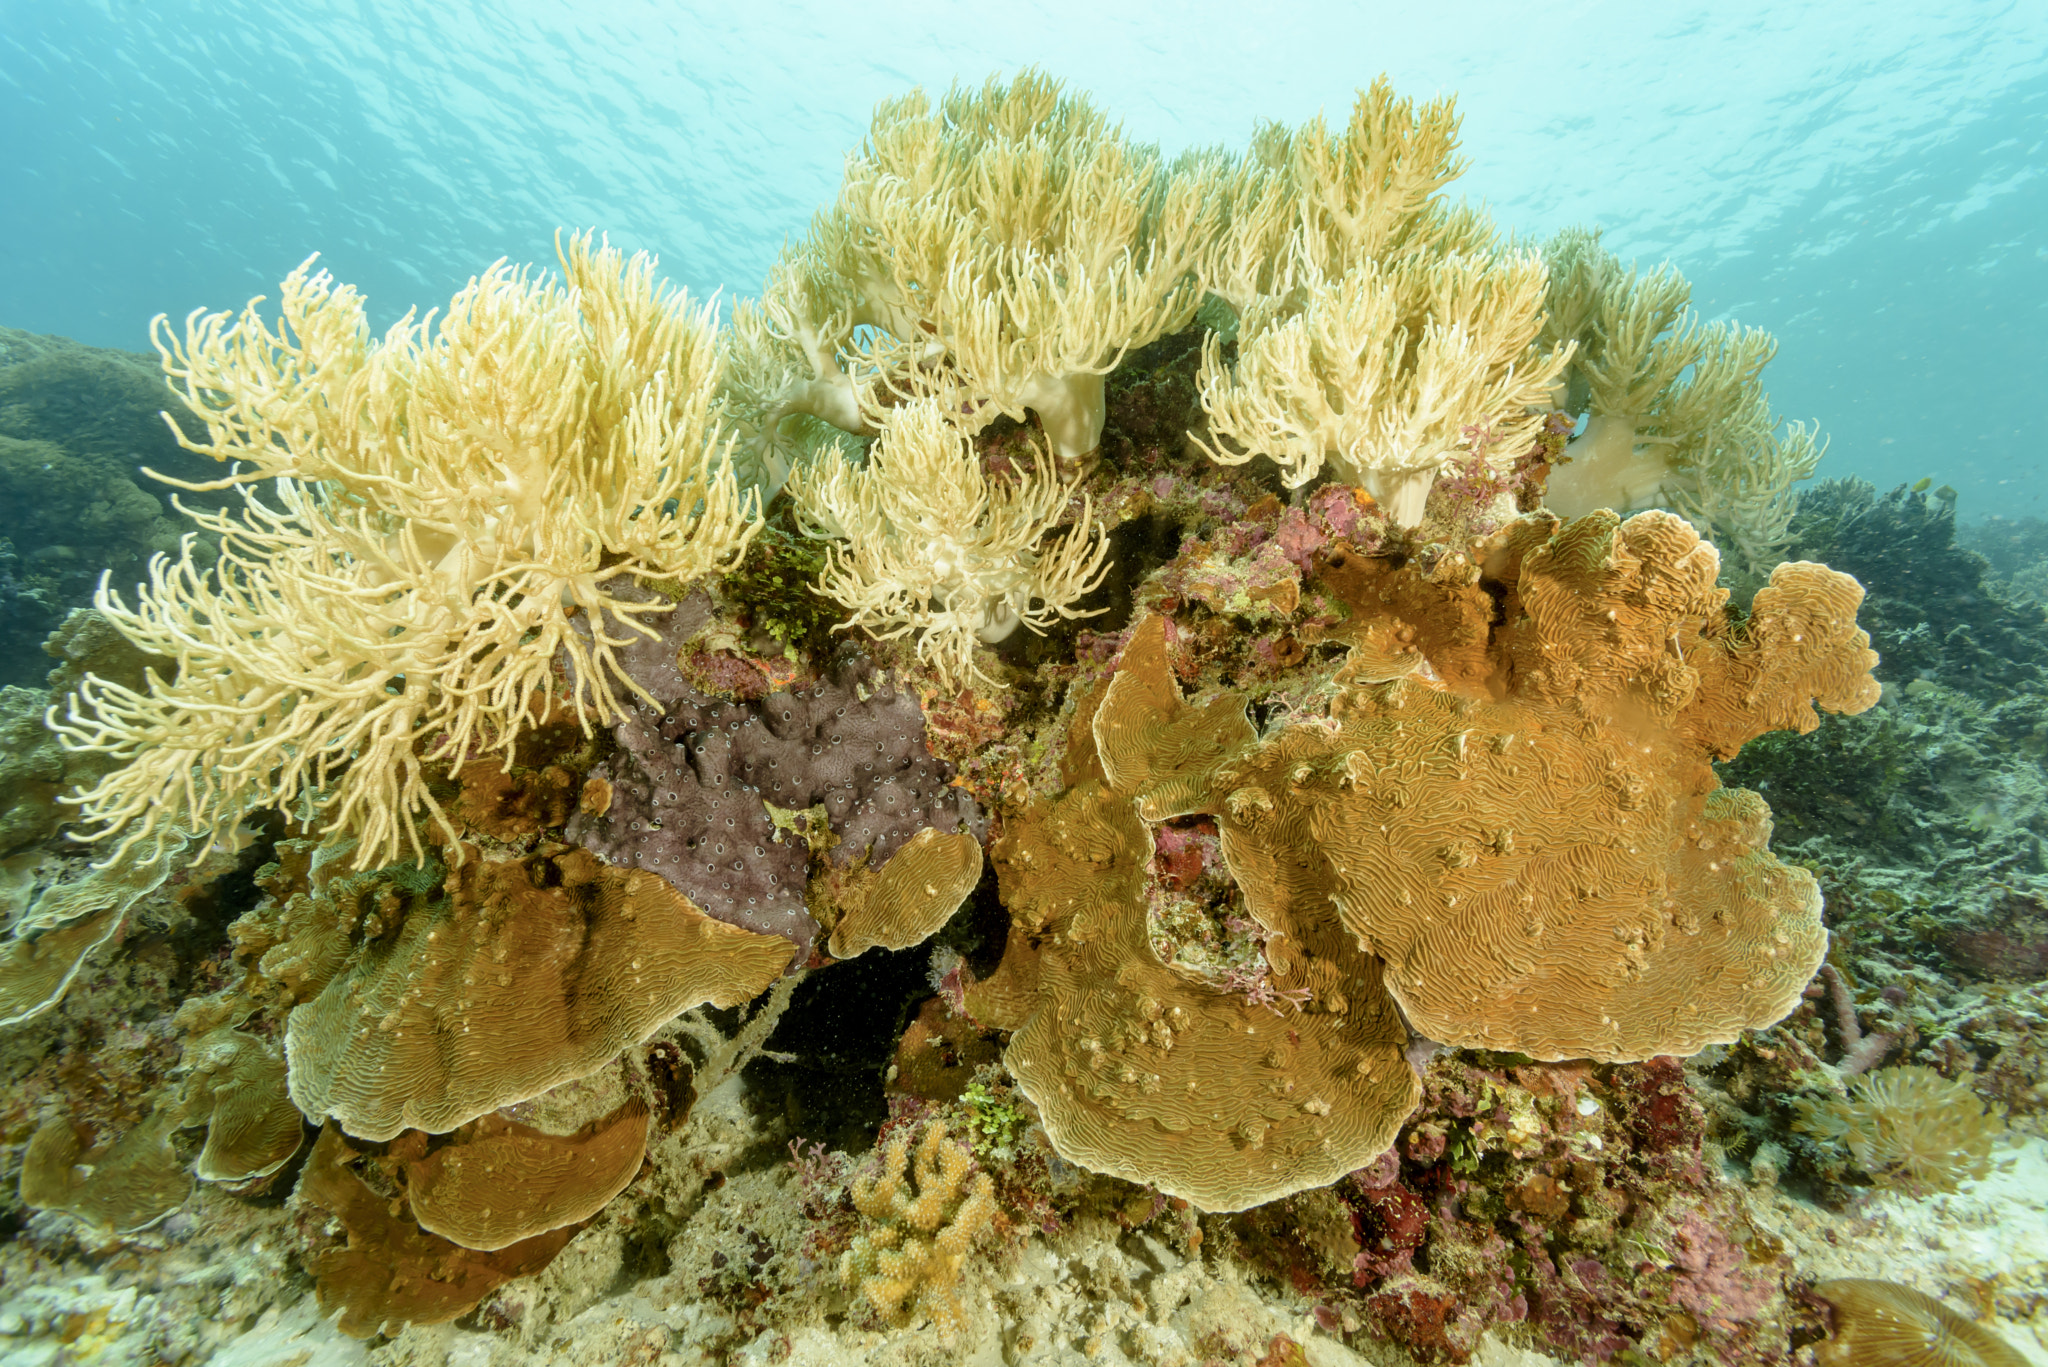 Nikon AF Nikkor 14mm F2.8D ED sample photo. Hybrid corals photography